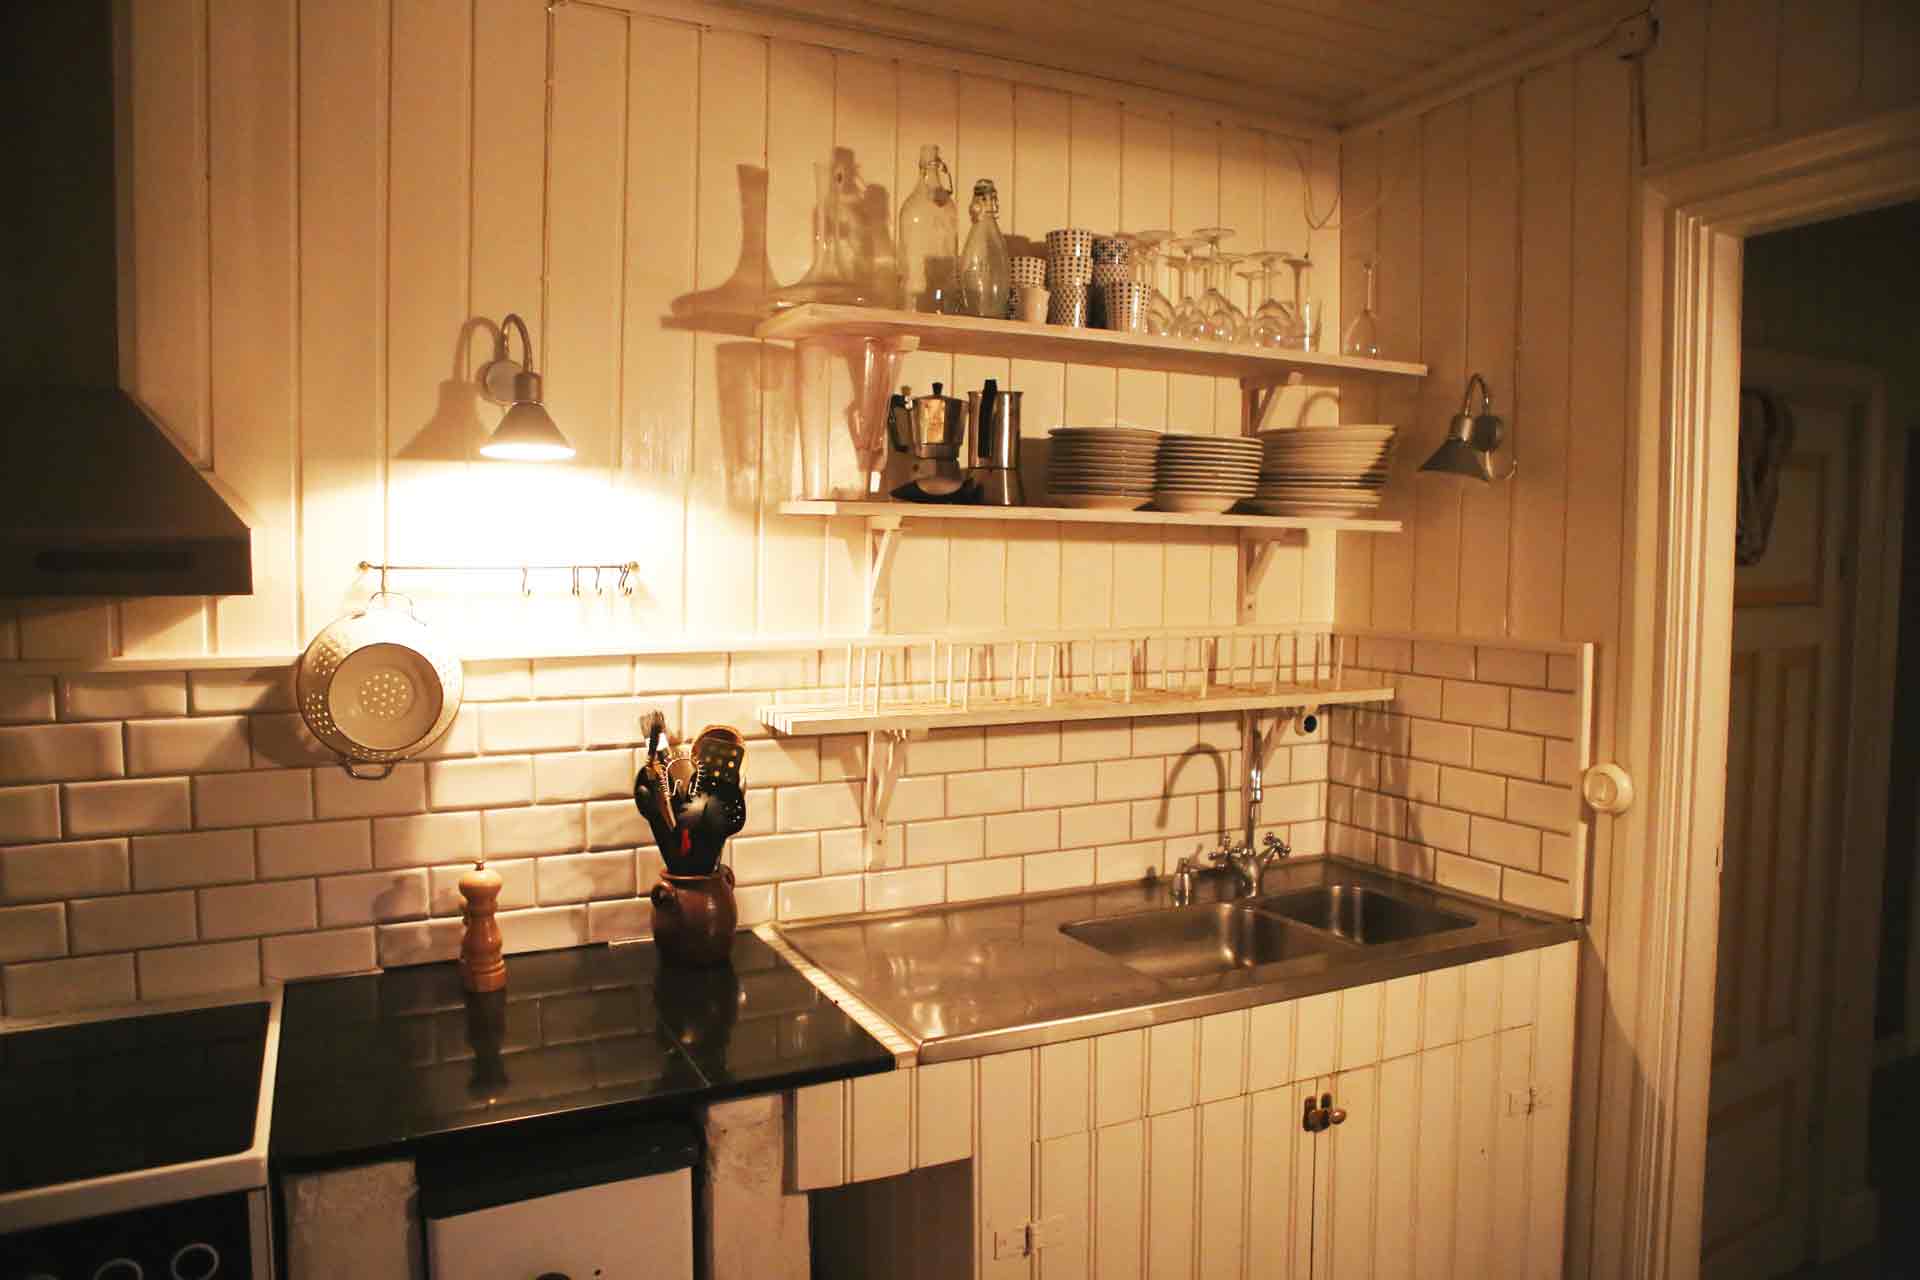 Ett vitt lantkök klätt pärlspont. På väggen står porslin på hyllor ovan diskhon. Arkitekt är Anders Frelin.